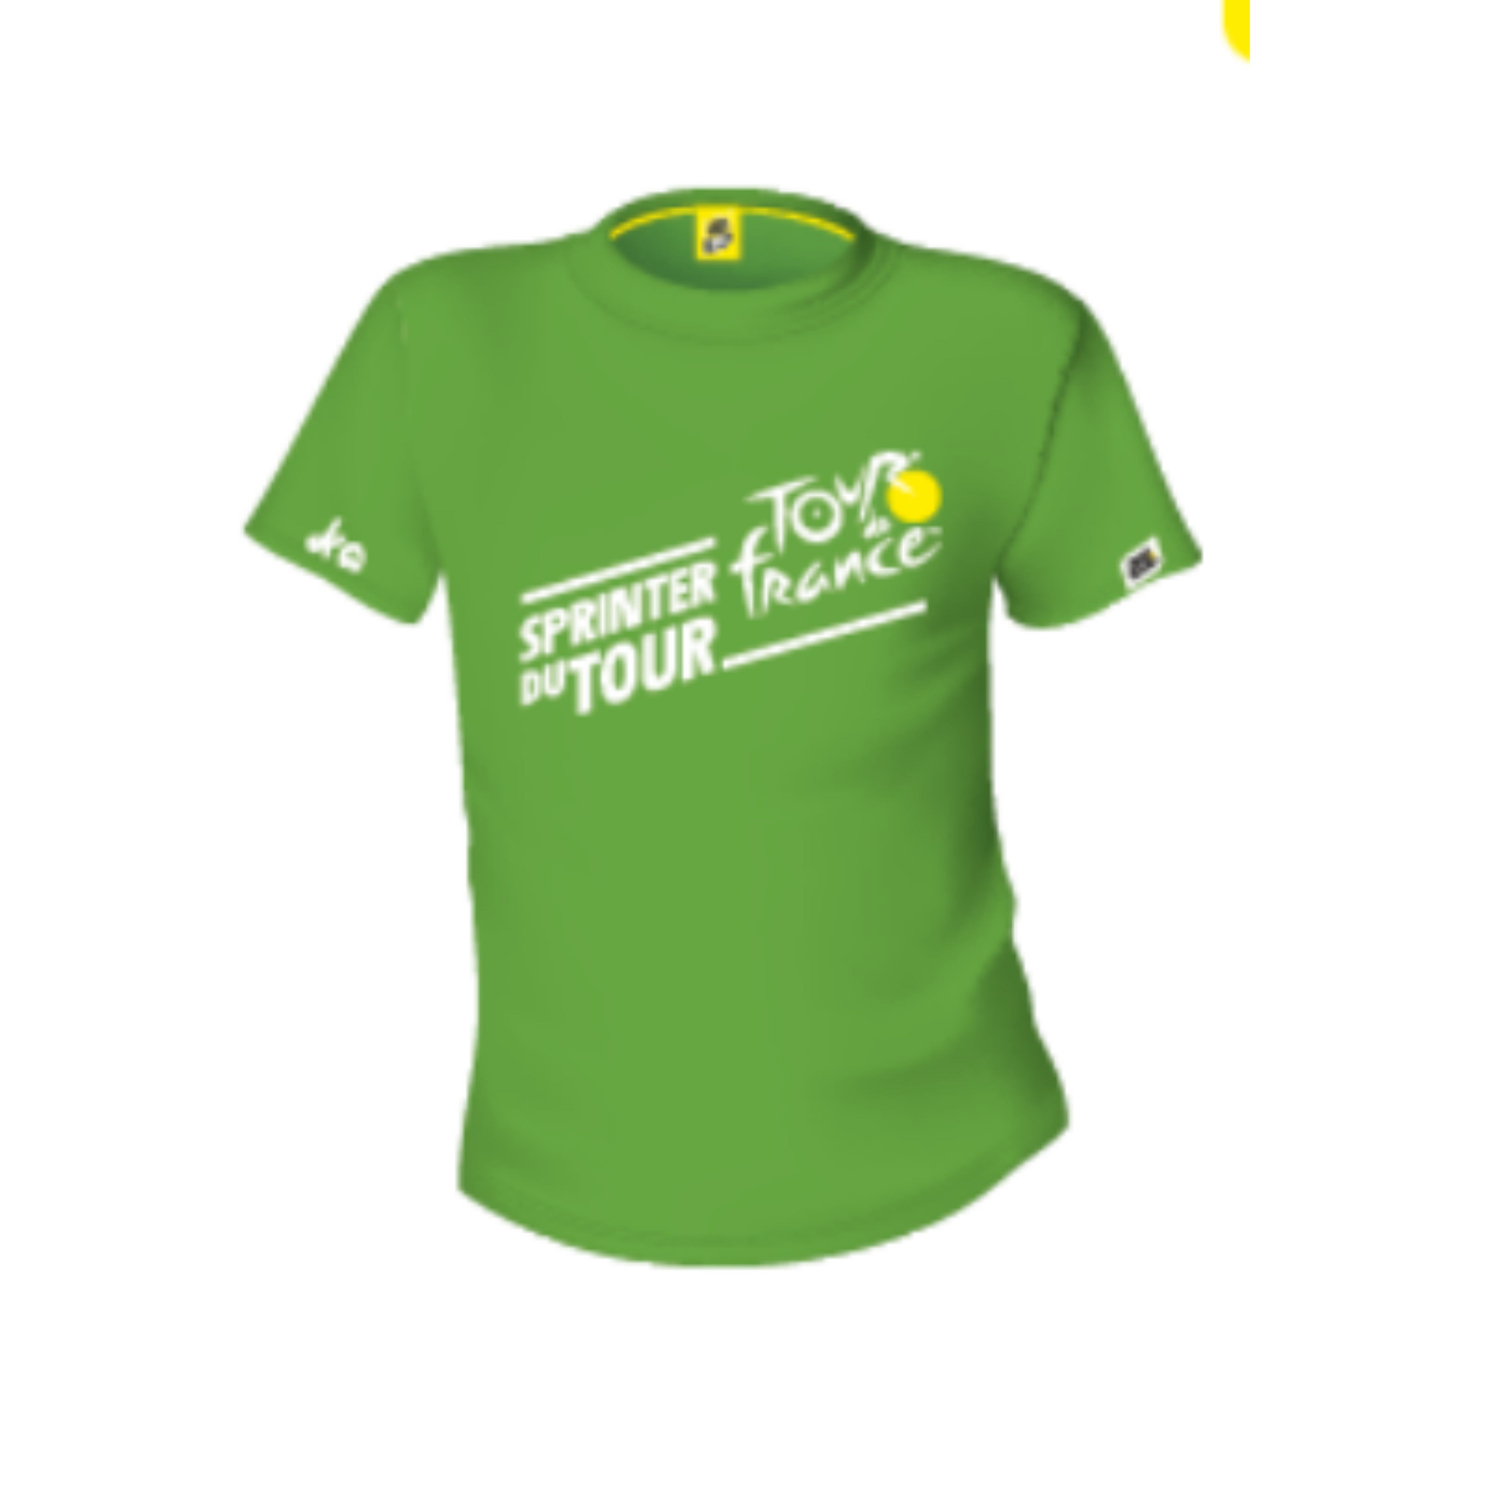 T-shirt Tour de France Leader Sprinteur du Tour Vert